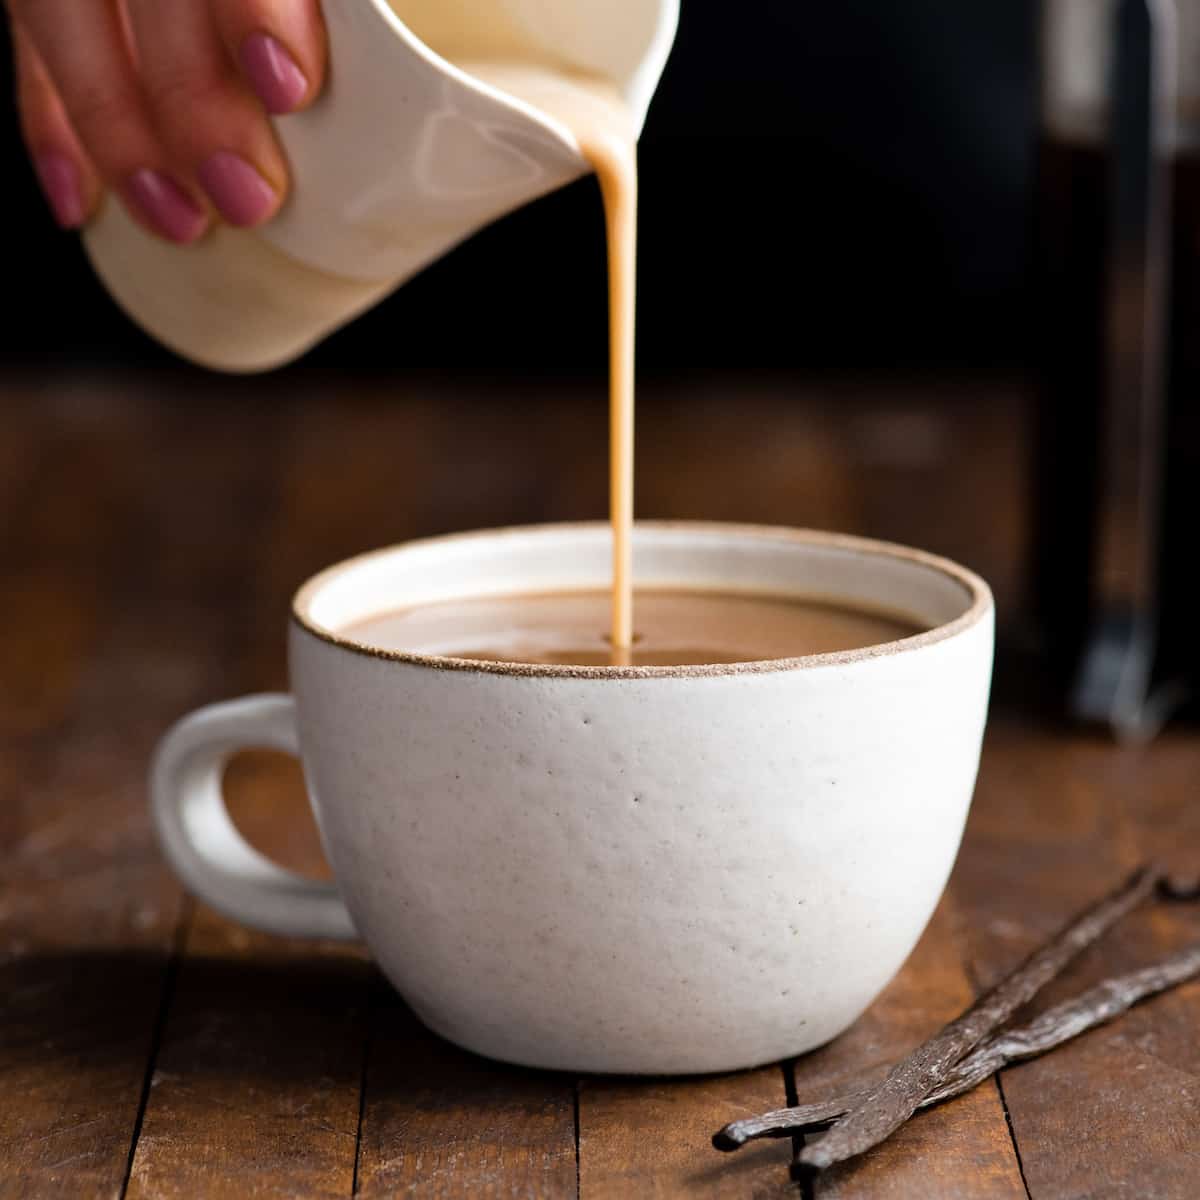 Healthy breakfast Ideas coffee creamer recipe